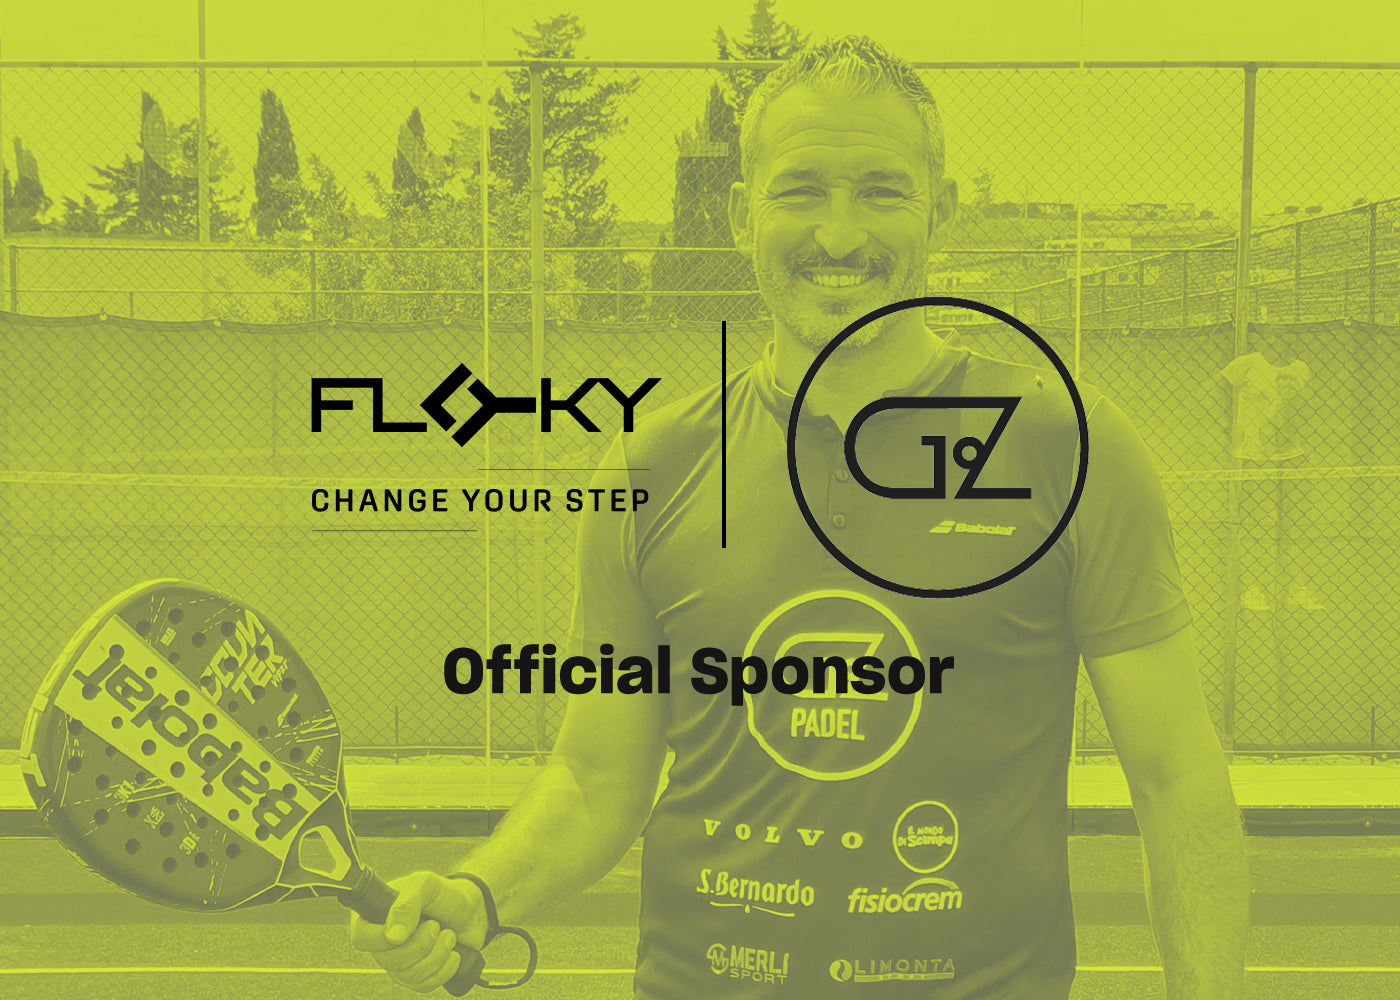 Dove il padel incontra le leggende dello sport italiano e internazionale: FLOKY sponsor di GZ19 Padel Tour